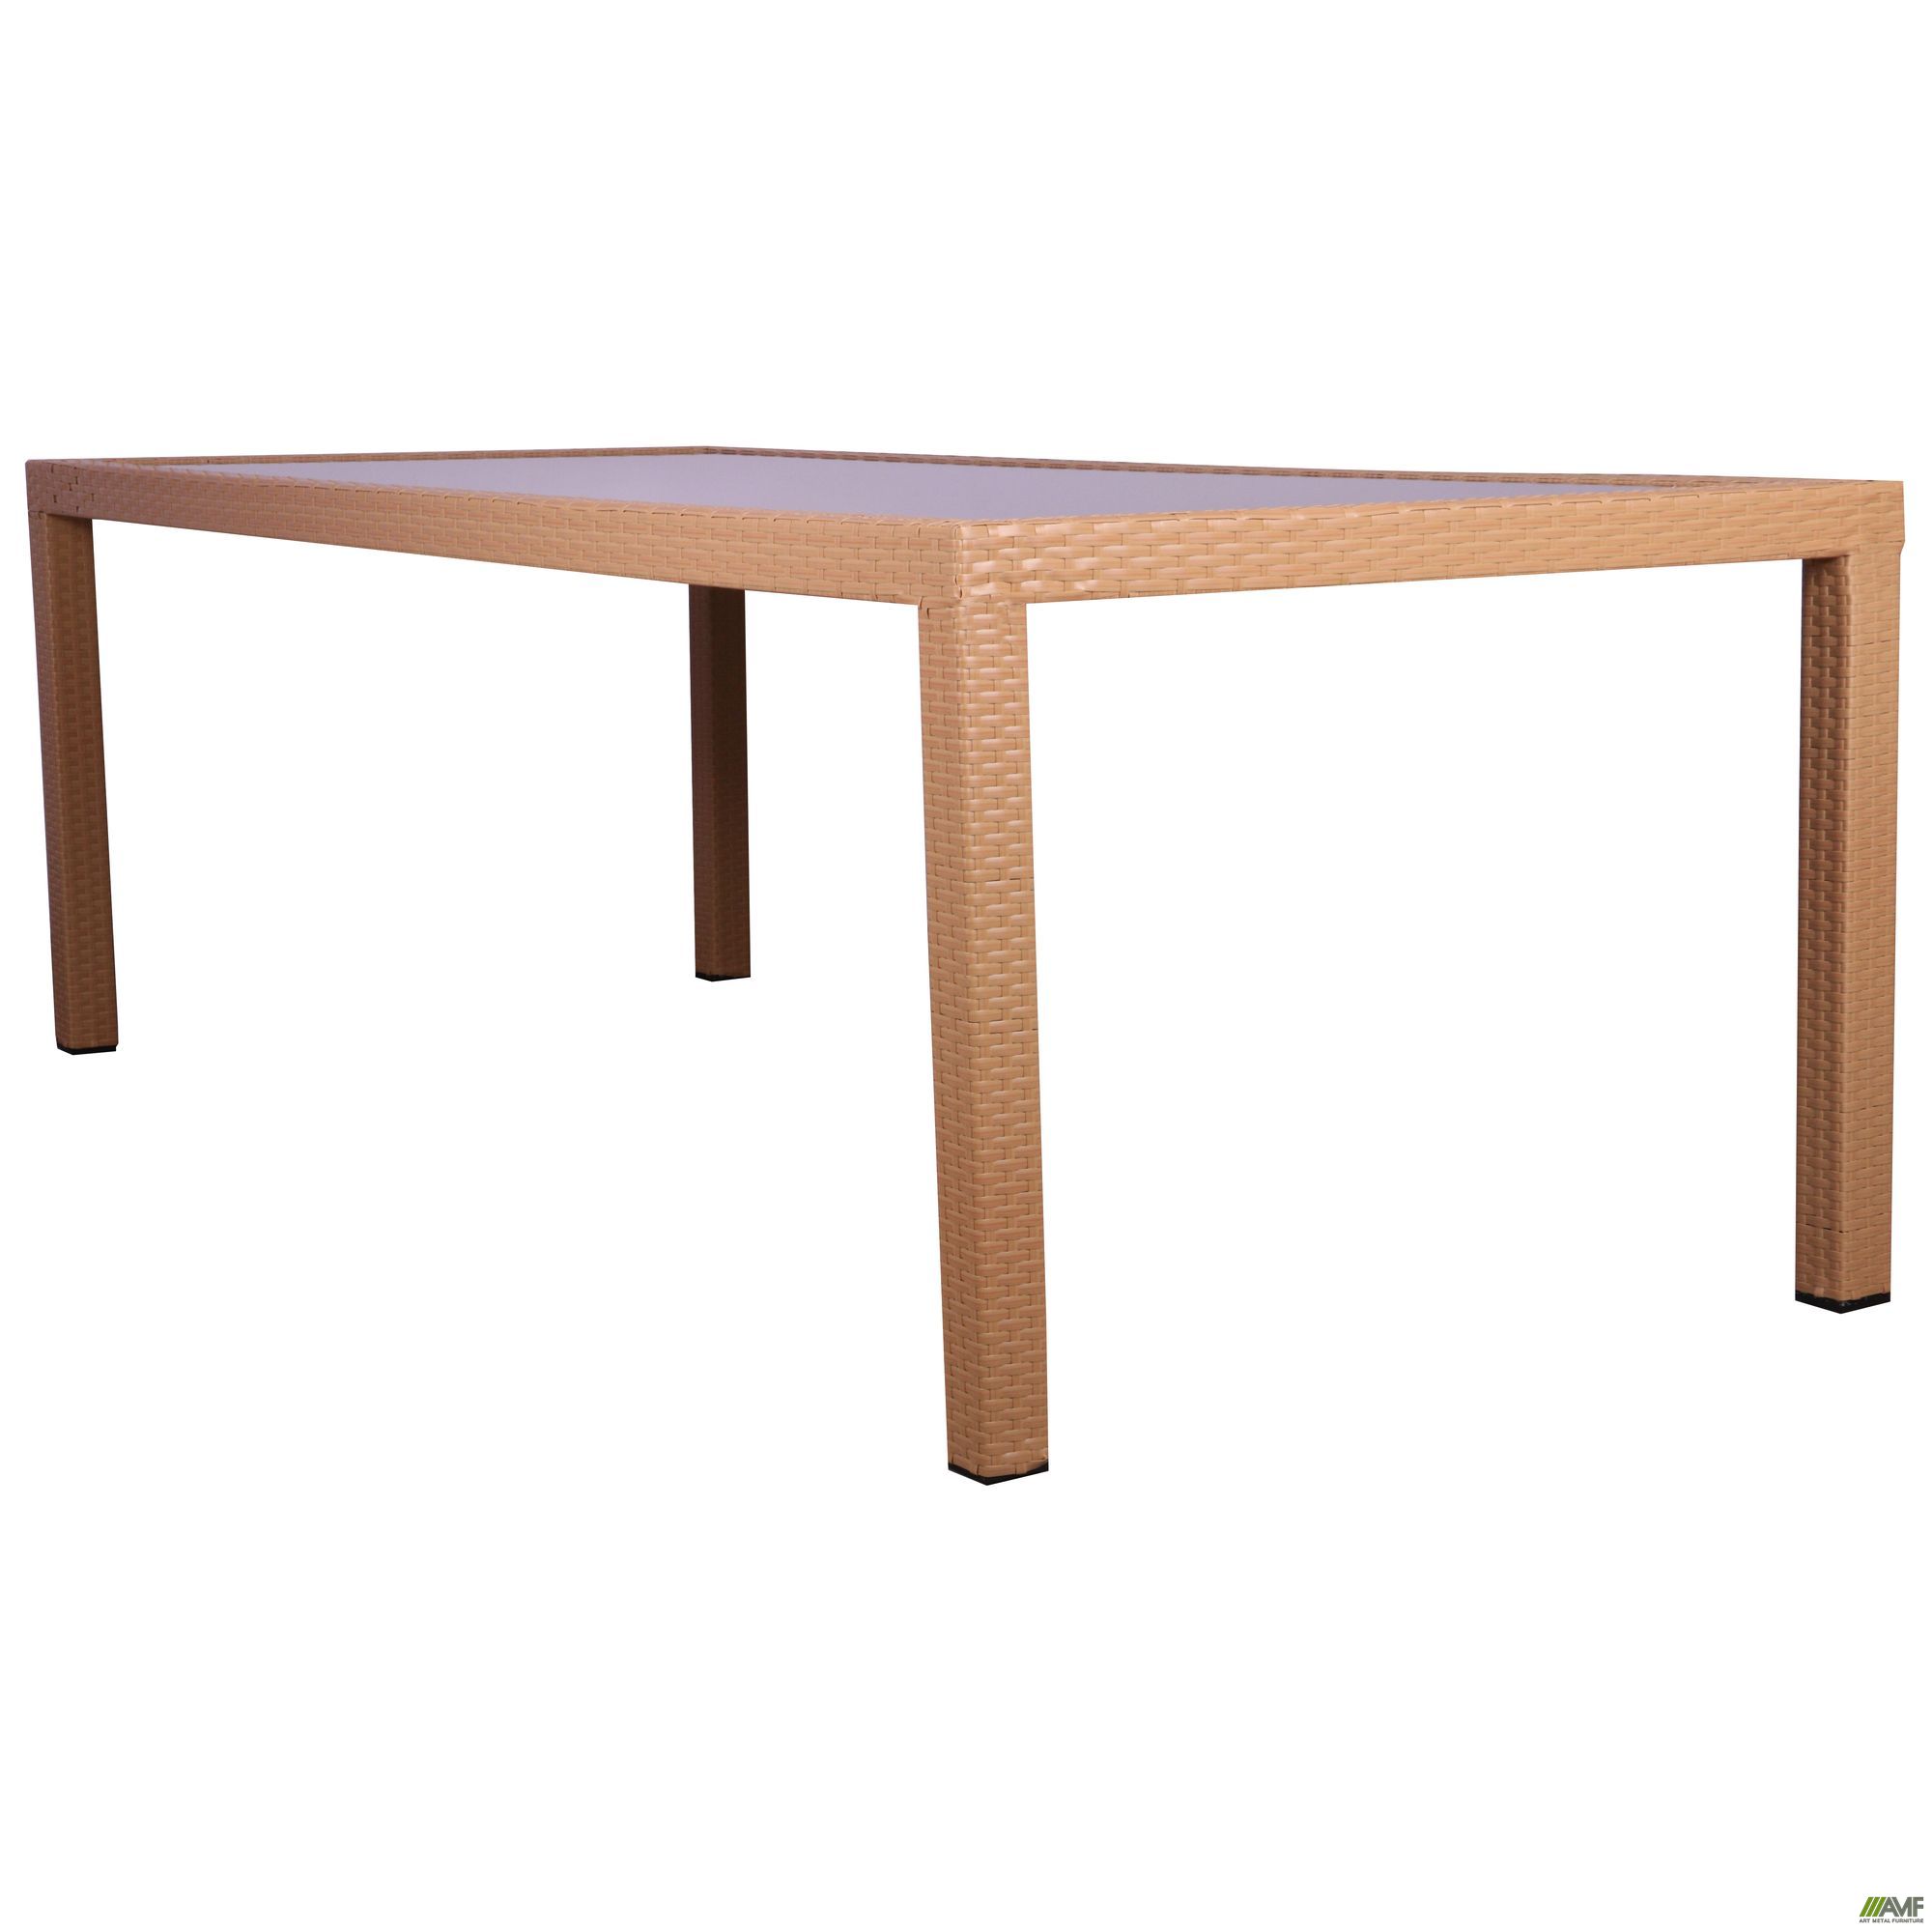 Фото 2 - Комплект мебели Samana-6 из ротанга Elit (SC-8849) Sand AM3041 ткань A14203 